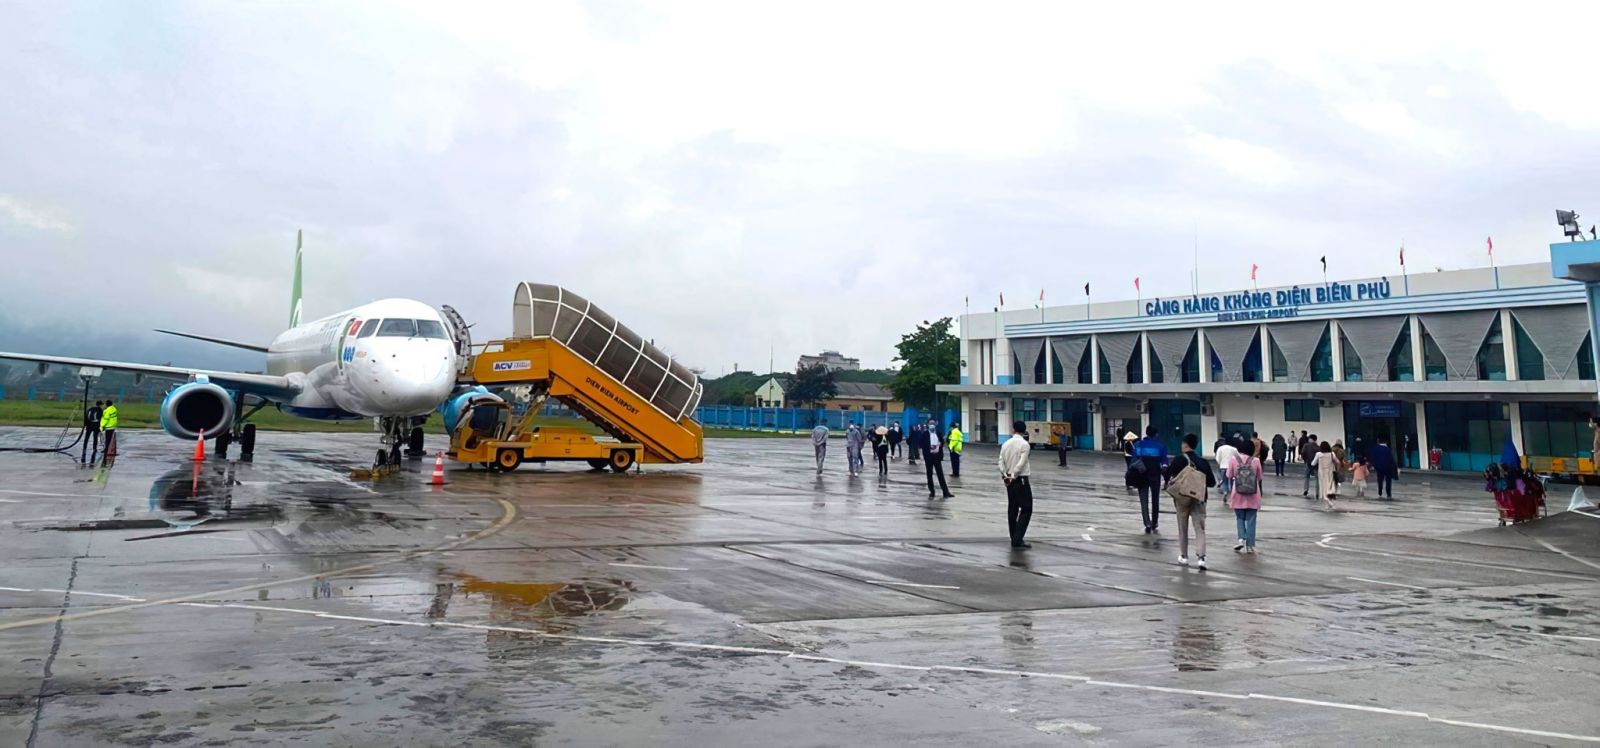 Sân bay Điện Biên Phủ là một trong số ít dự án sân bay xây mới được triển khai gần đây, do nguồn vốn ACV thực hiện  MAI HÀ